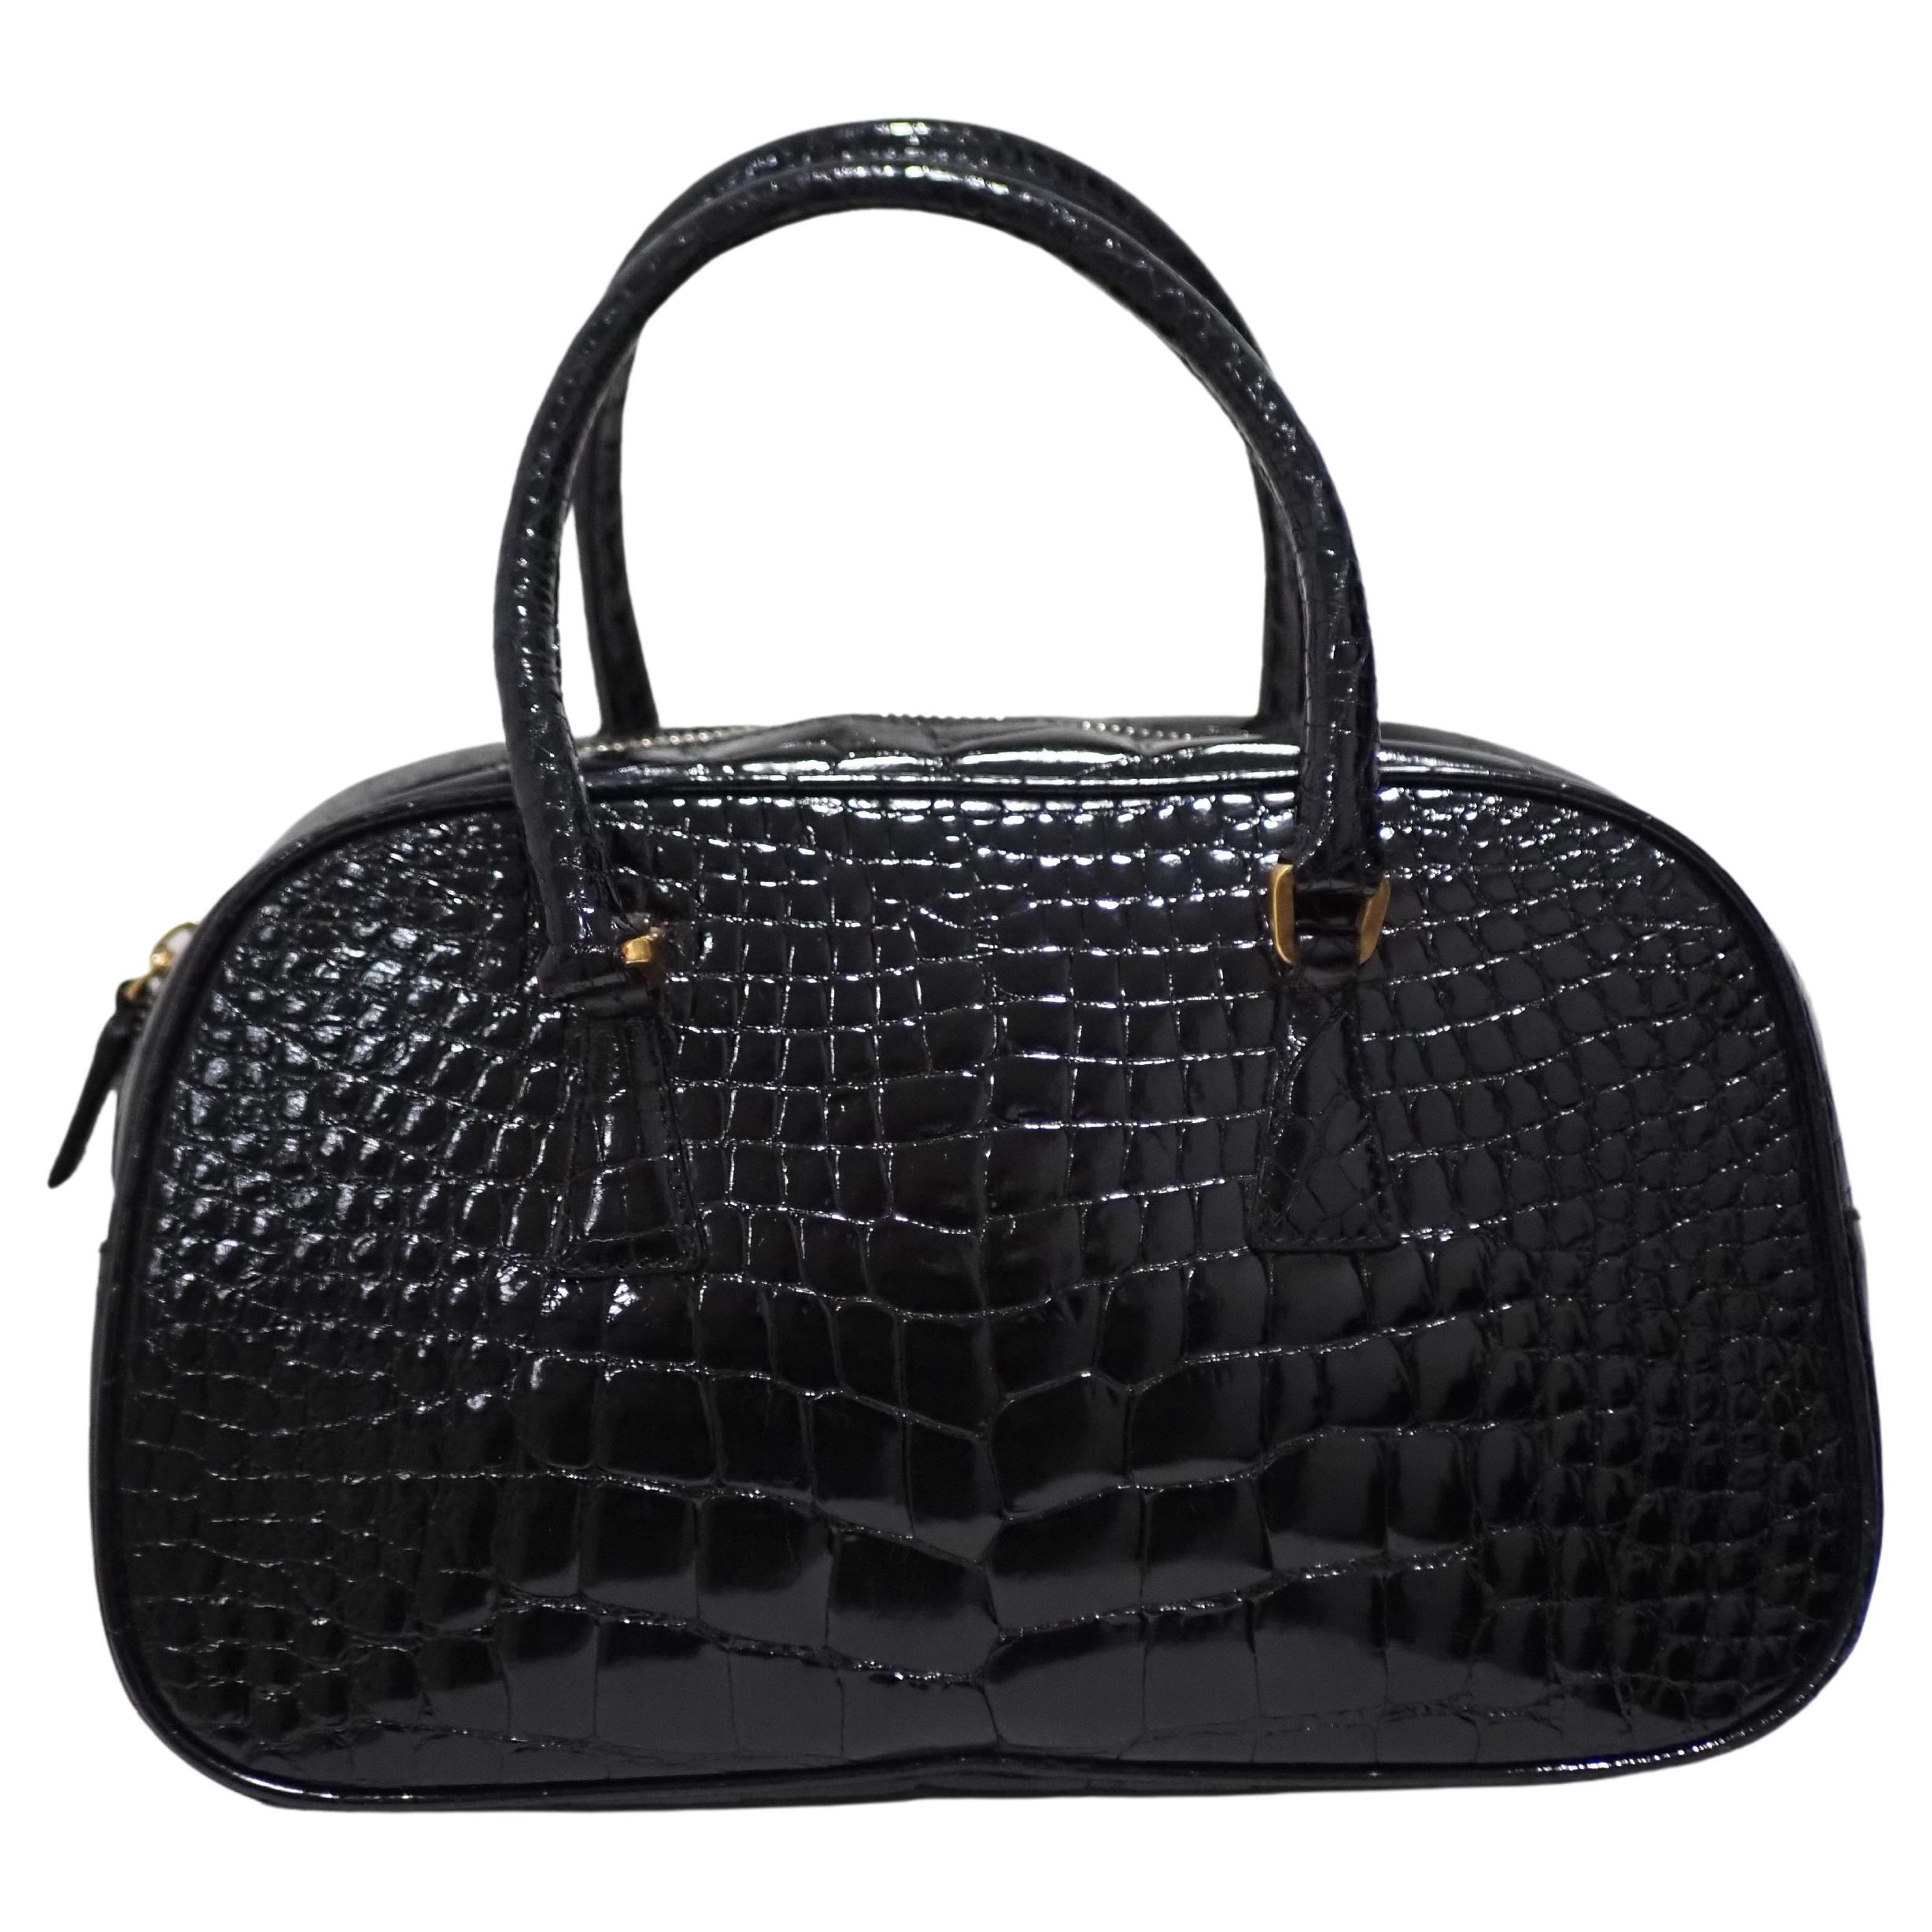 Prada black croco leather handbag shoulder bag